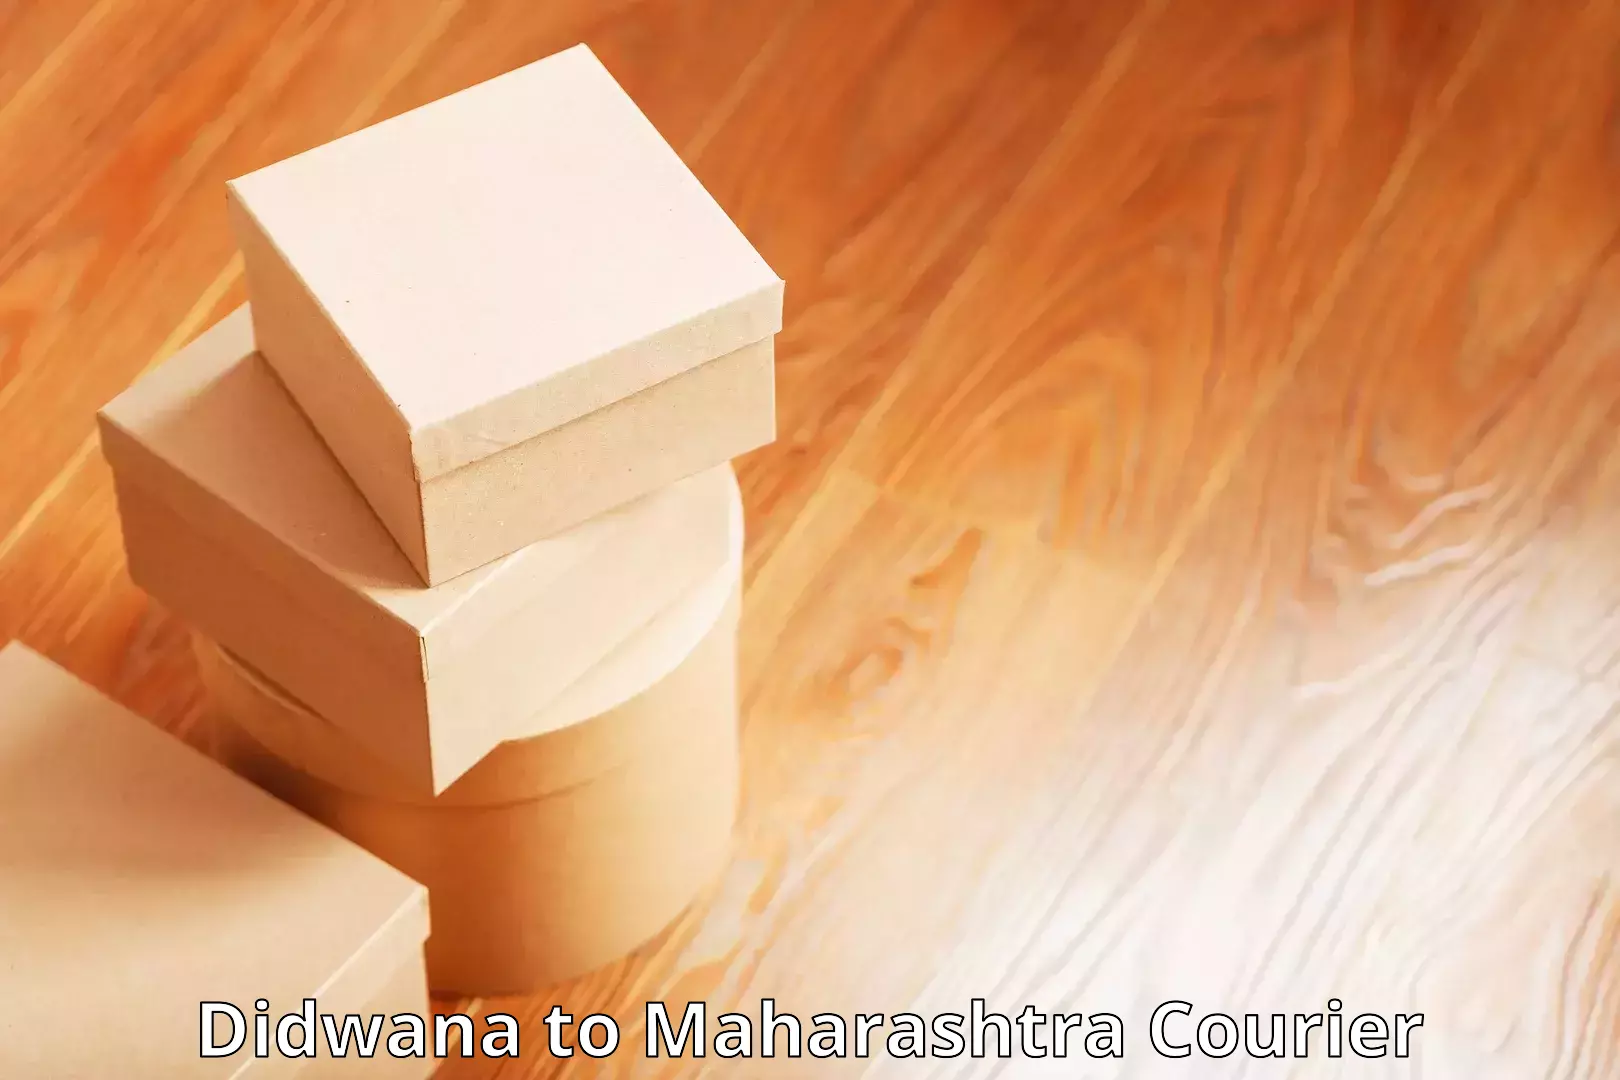 Logistics service provider Didwana to Maharashtra